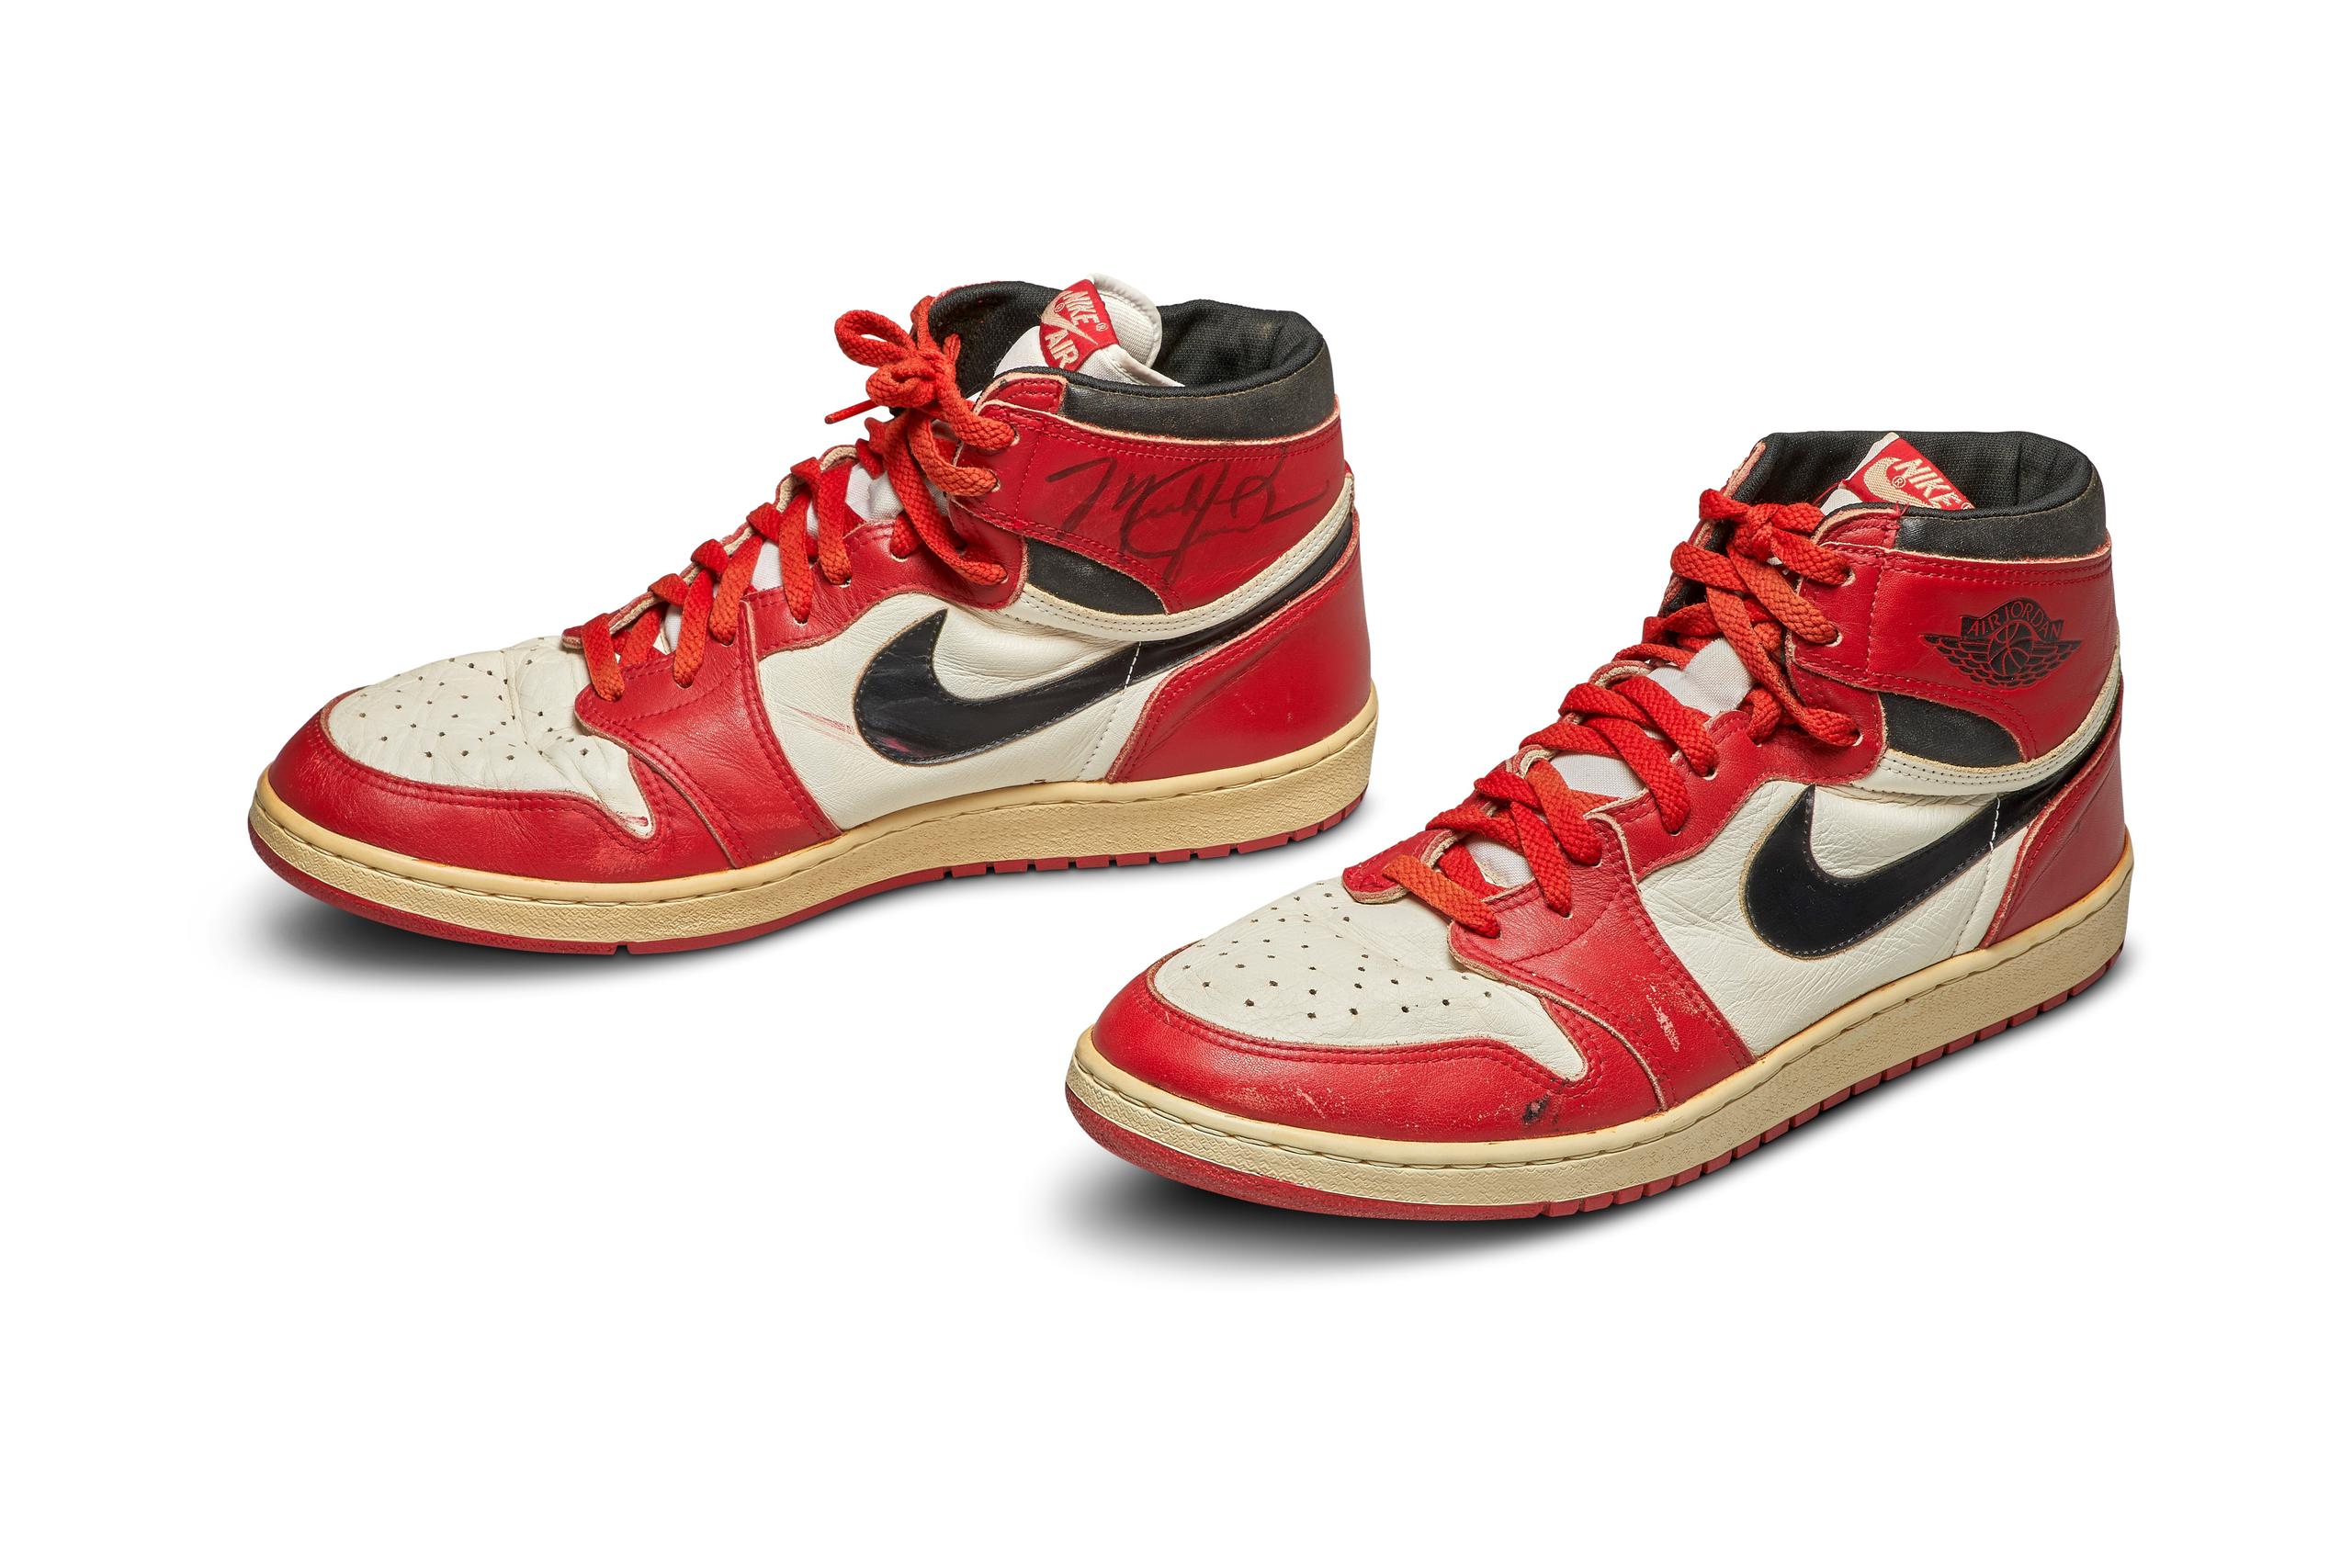 Fotografía cedida por la casa de subastas Sotheby's donde se muestra las Nike Air Jordan 1S que acaban de romper el récord del calzado más caro vendido vía subasta en la historia. En los últimos minutos de la subasta el precio ofrecido subió por más de 300,000 dólares.